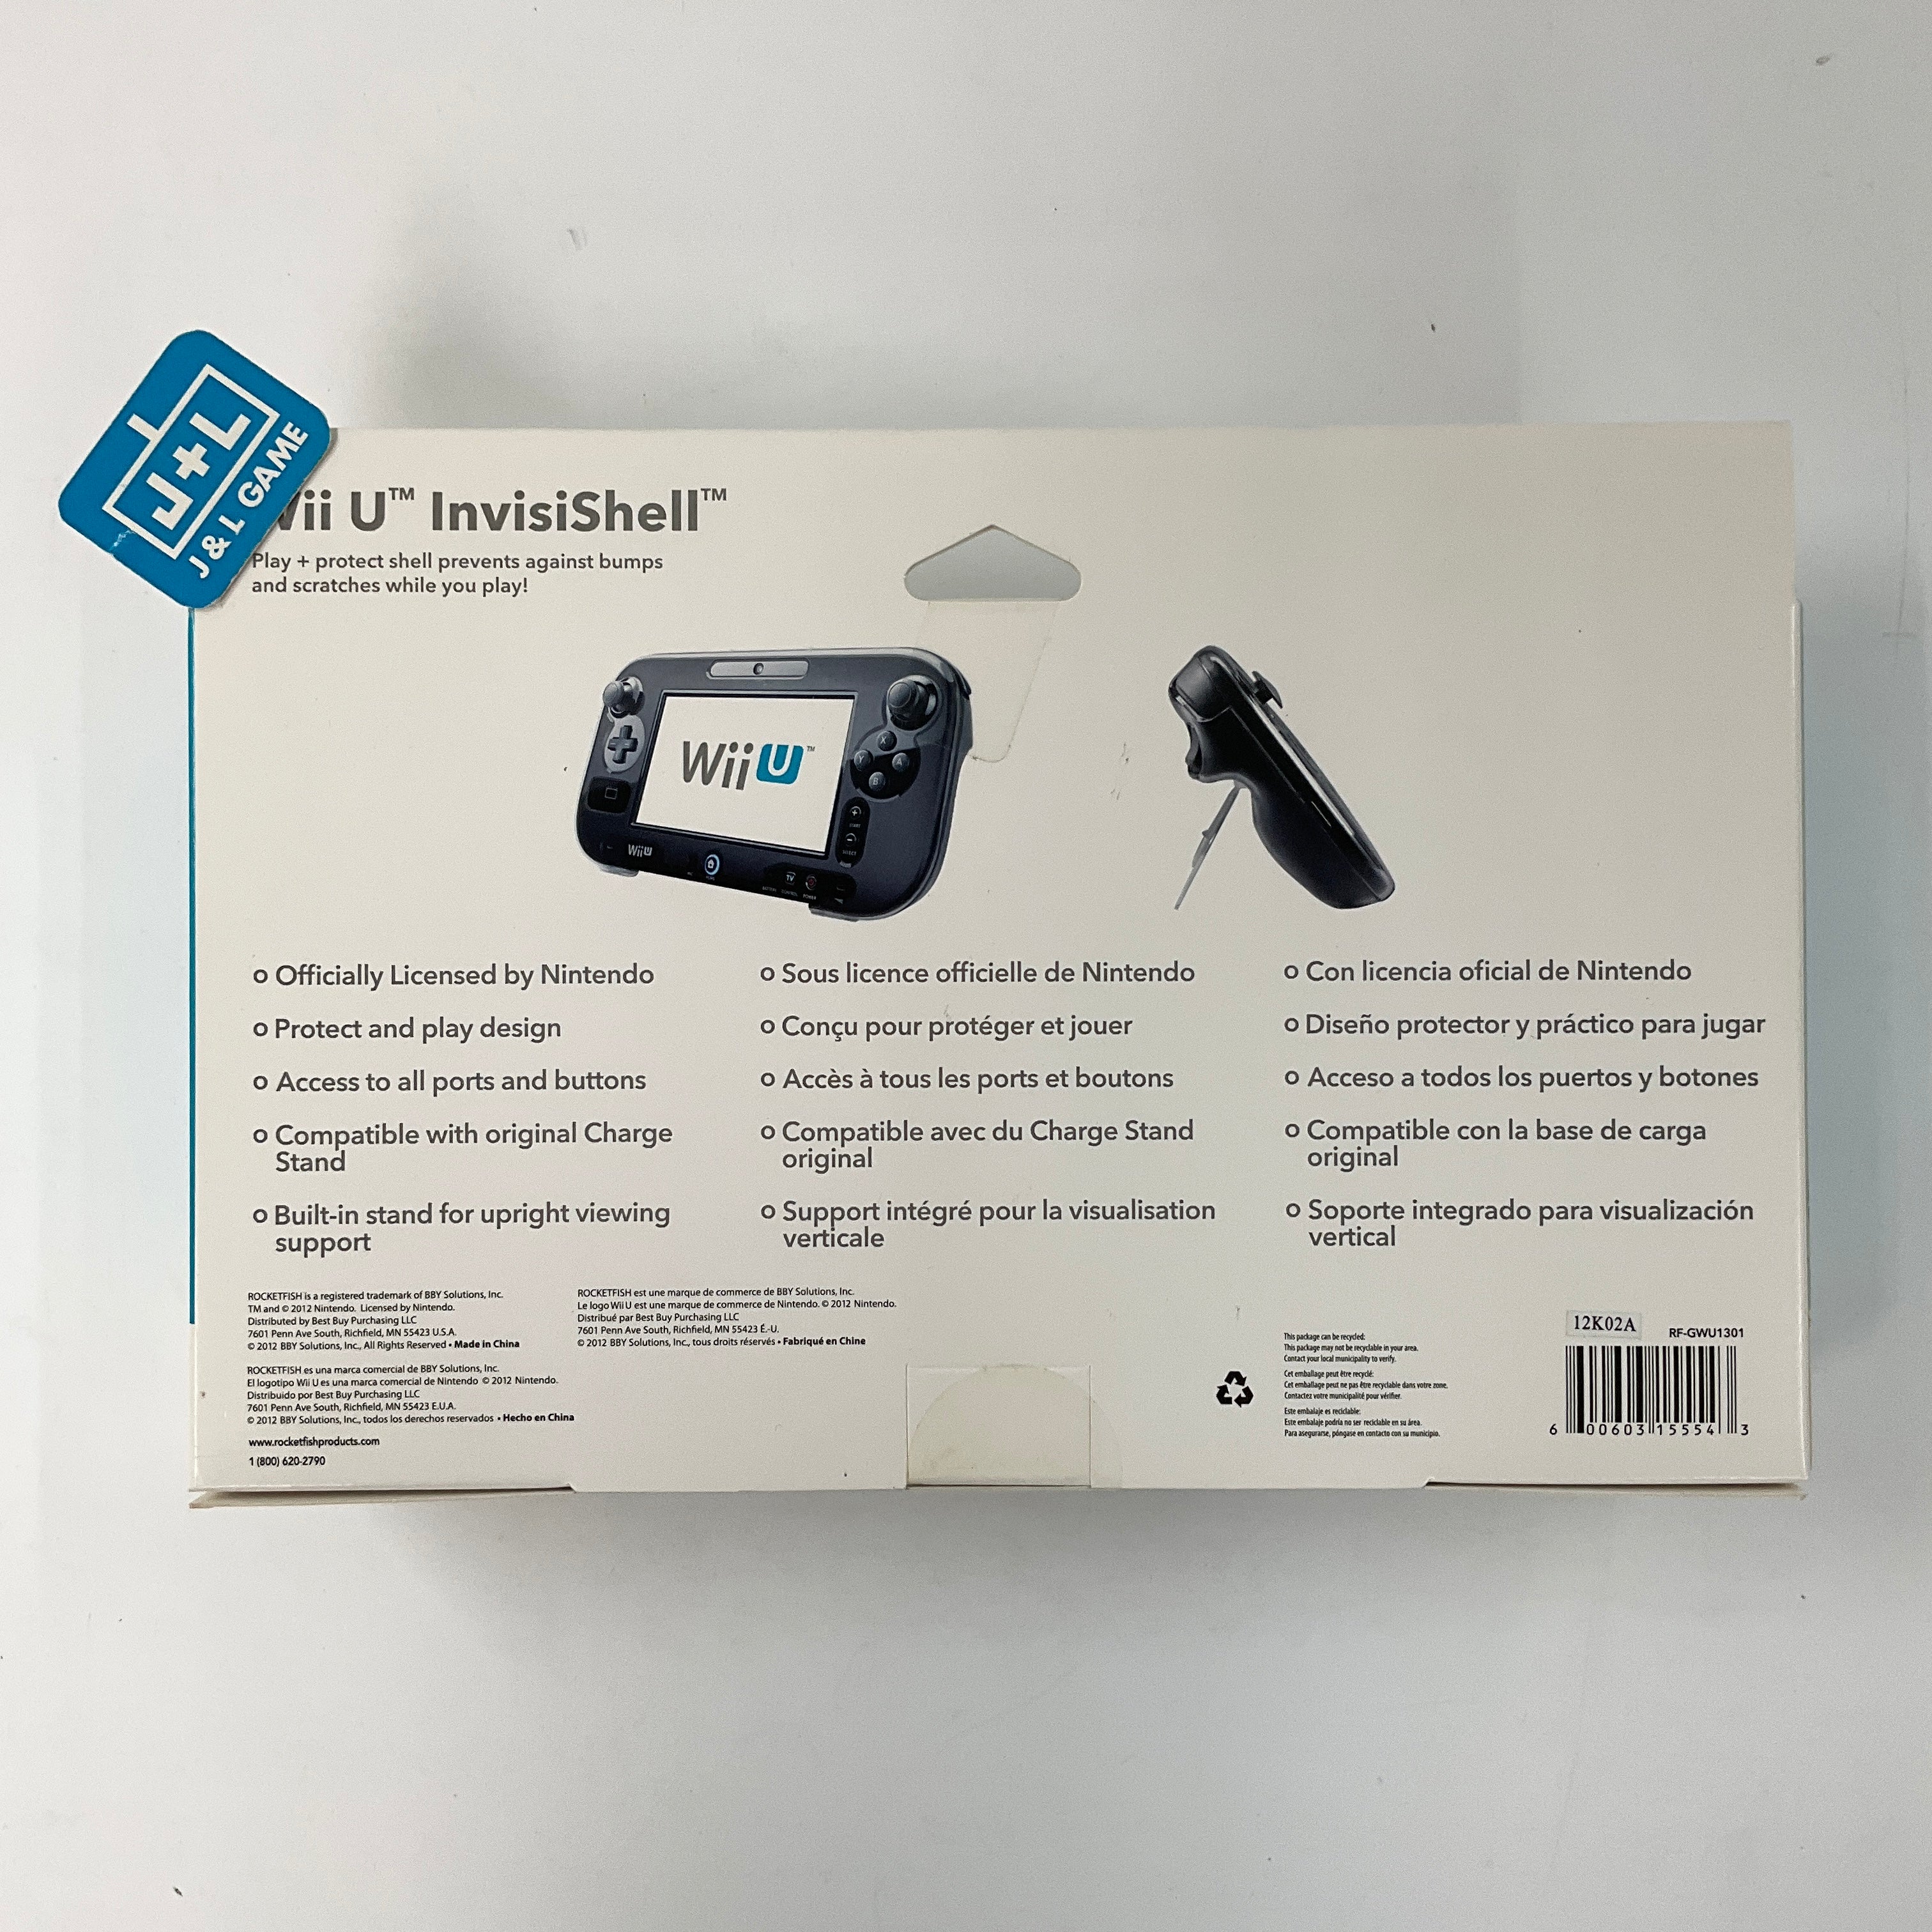 Rocketfish Wii U InvisiShell Transparent - Nintendo Wii U Accessories Rockfish   